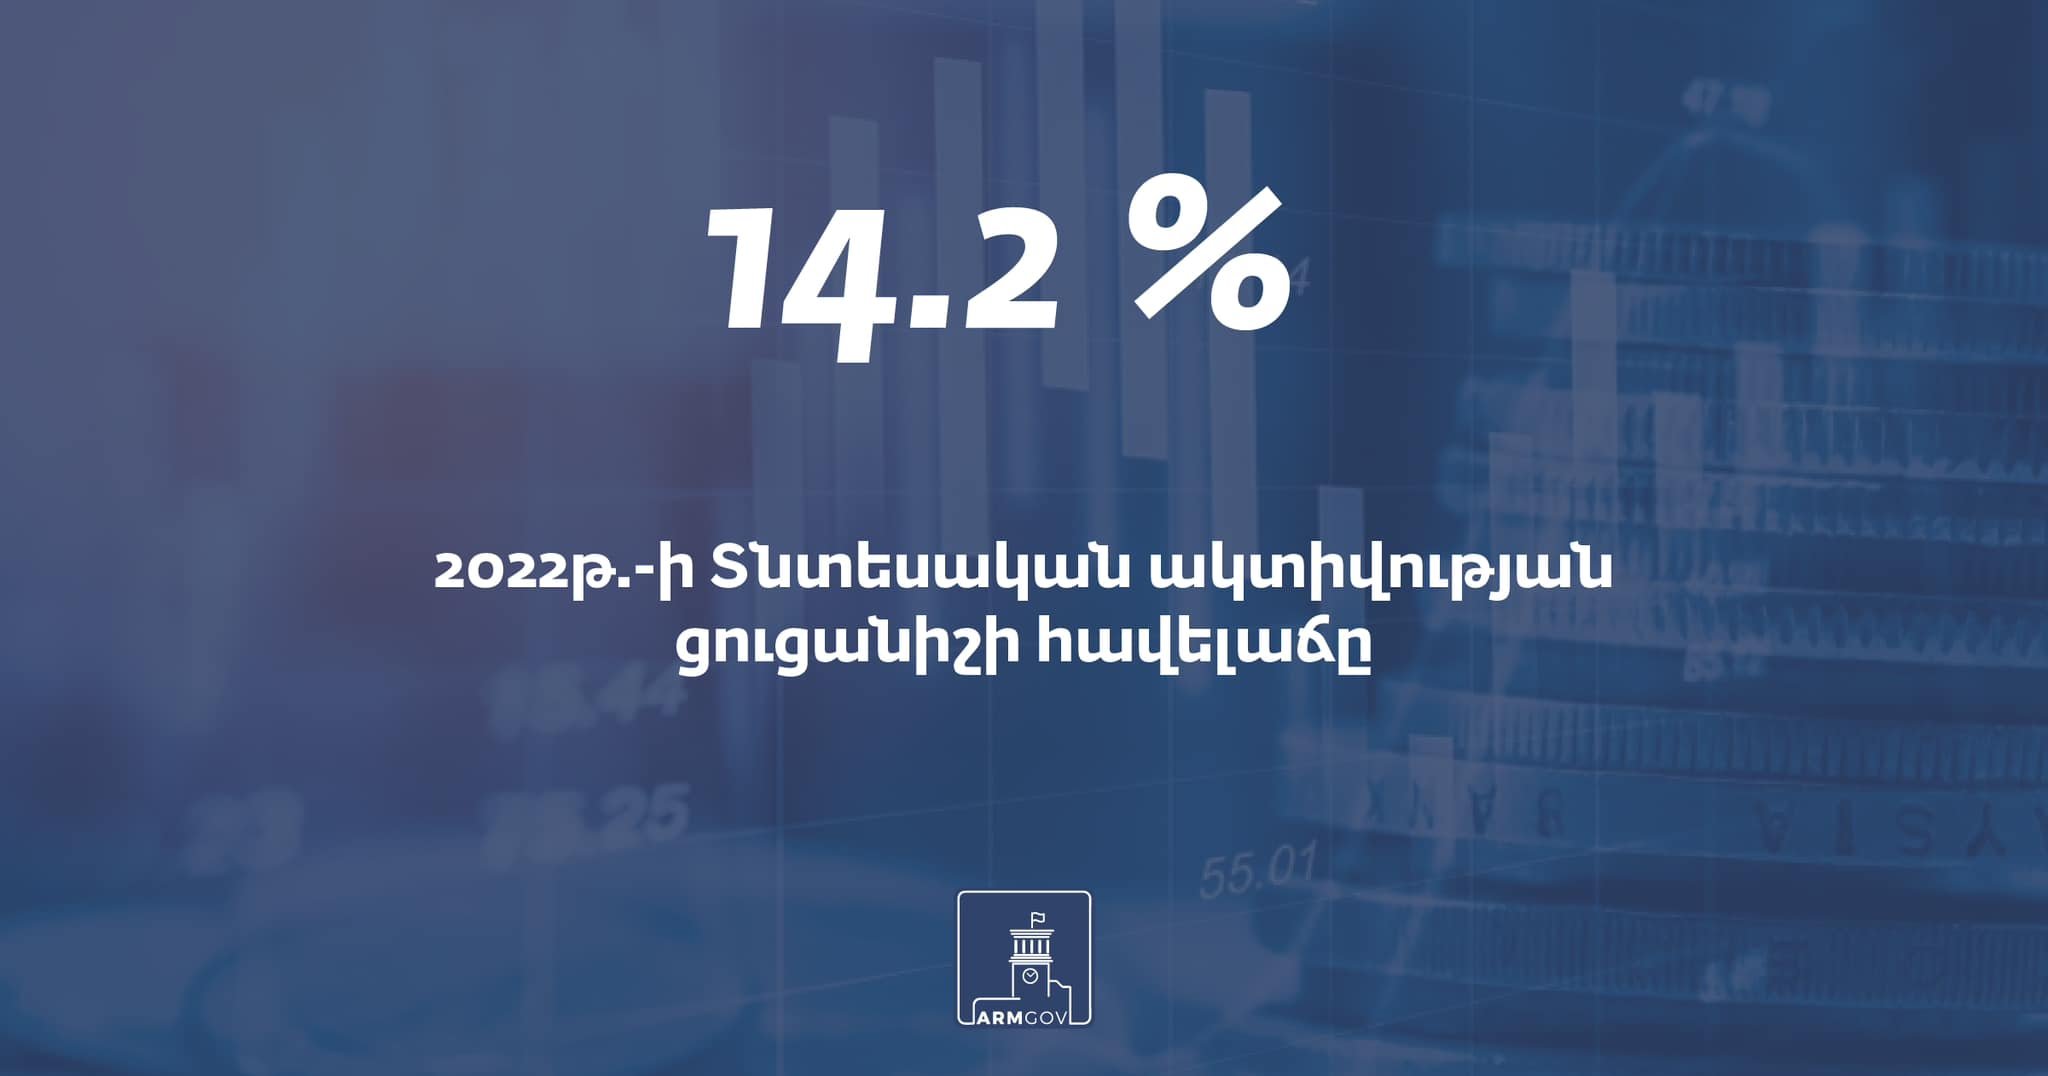 Նախորդ տարվա համեմատ Հայաստանում Տնտեսական ակտիվության ցուցանիշի հավելաճը կազմել է 14.2%, արտաքին առևտրաշրջանառությունն աճել է 68.6%-ով, իսկ  սպառողական շուկայում գներն աճել են 8.6%-ով